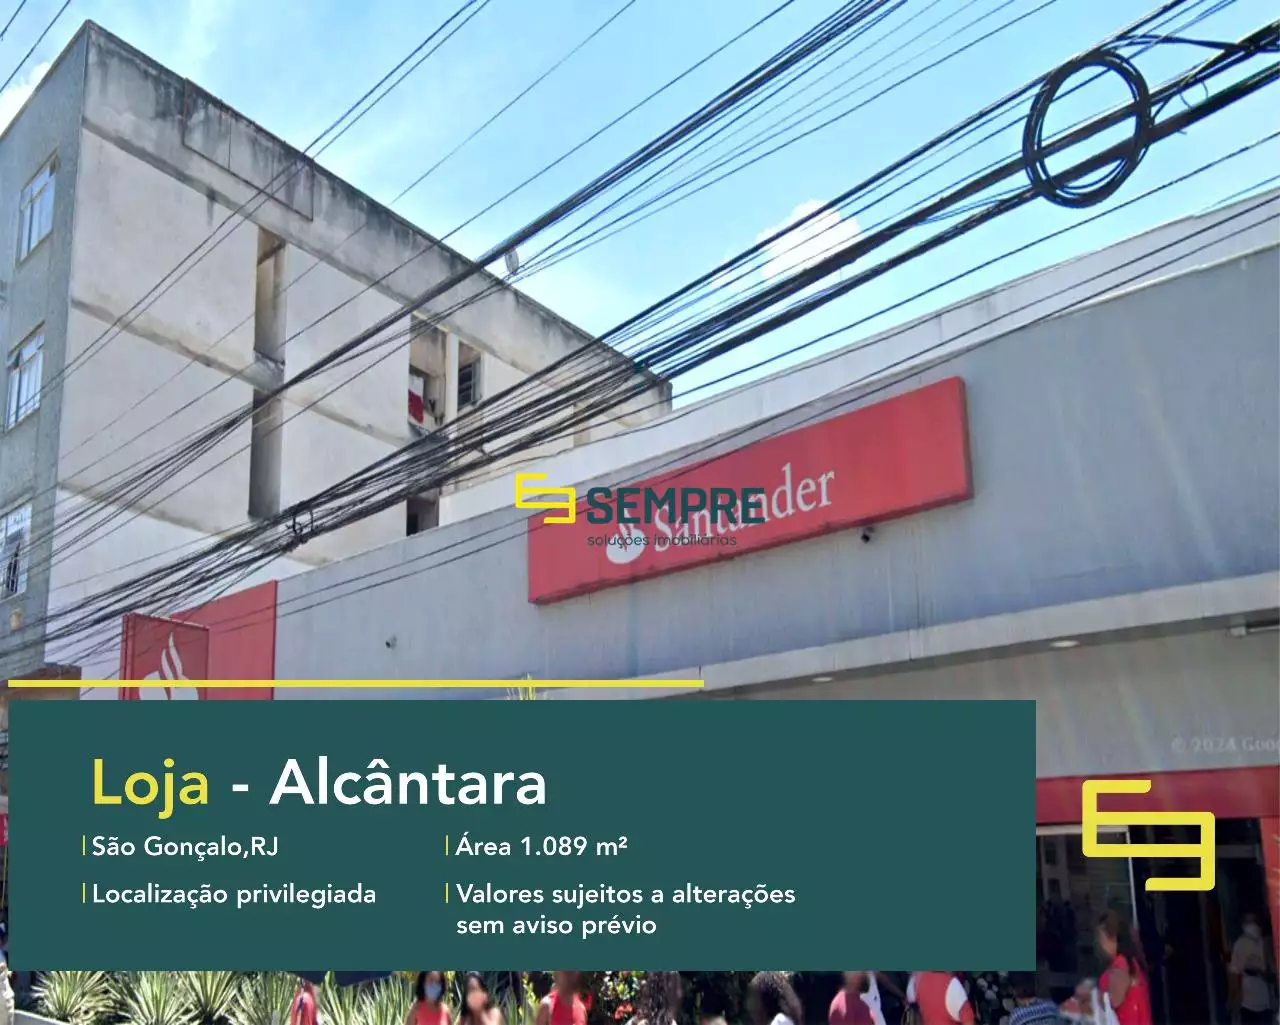 Loja para alugar em Alcântara São Gonçalo/RJ, em excelente localização. O estabelecimento comercial conta com área de 1.089,68 m².